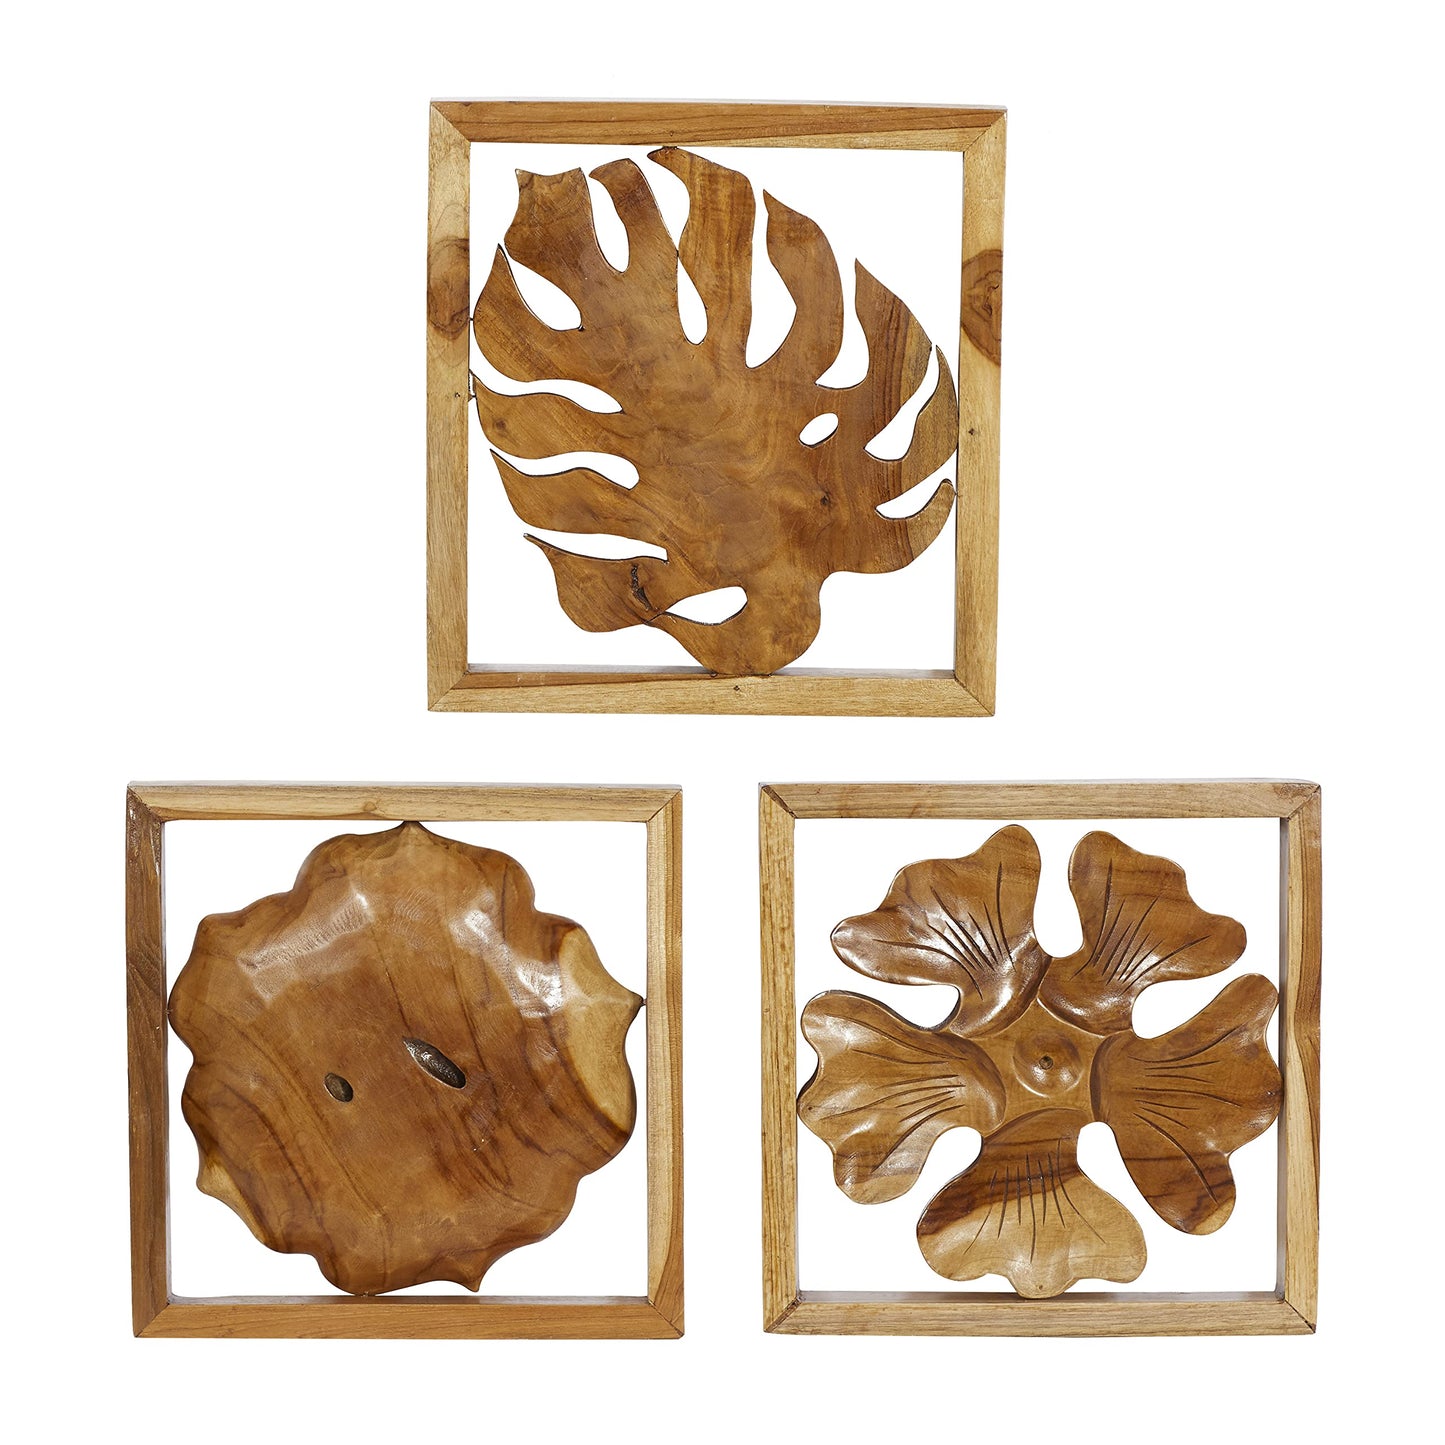 Deco 79 Teak Wood Floral Handmade Framed Carved Leaf and Wall Decor, Set of 3 14", 14", 15" W, Brown